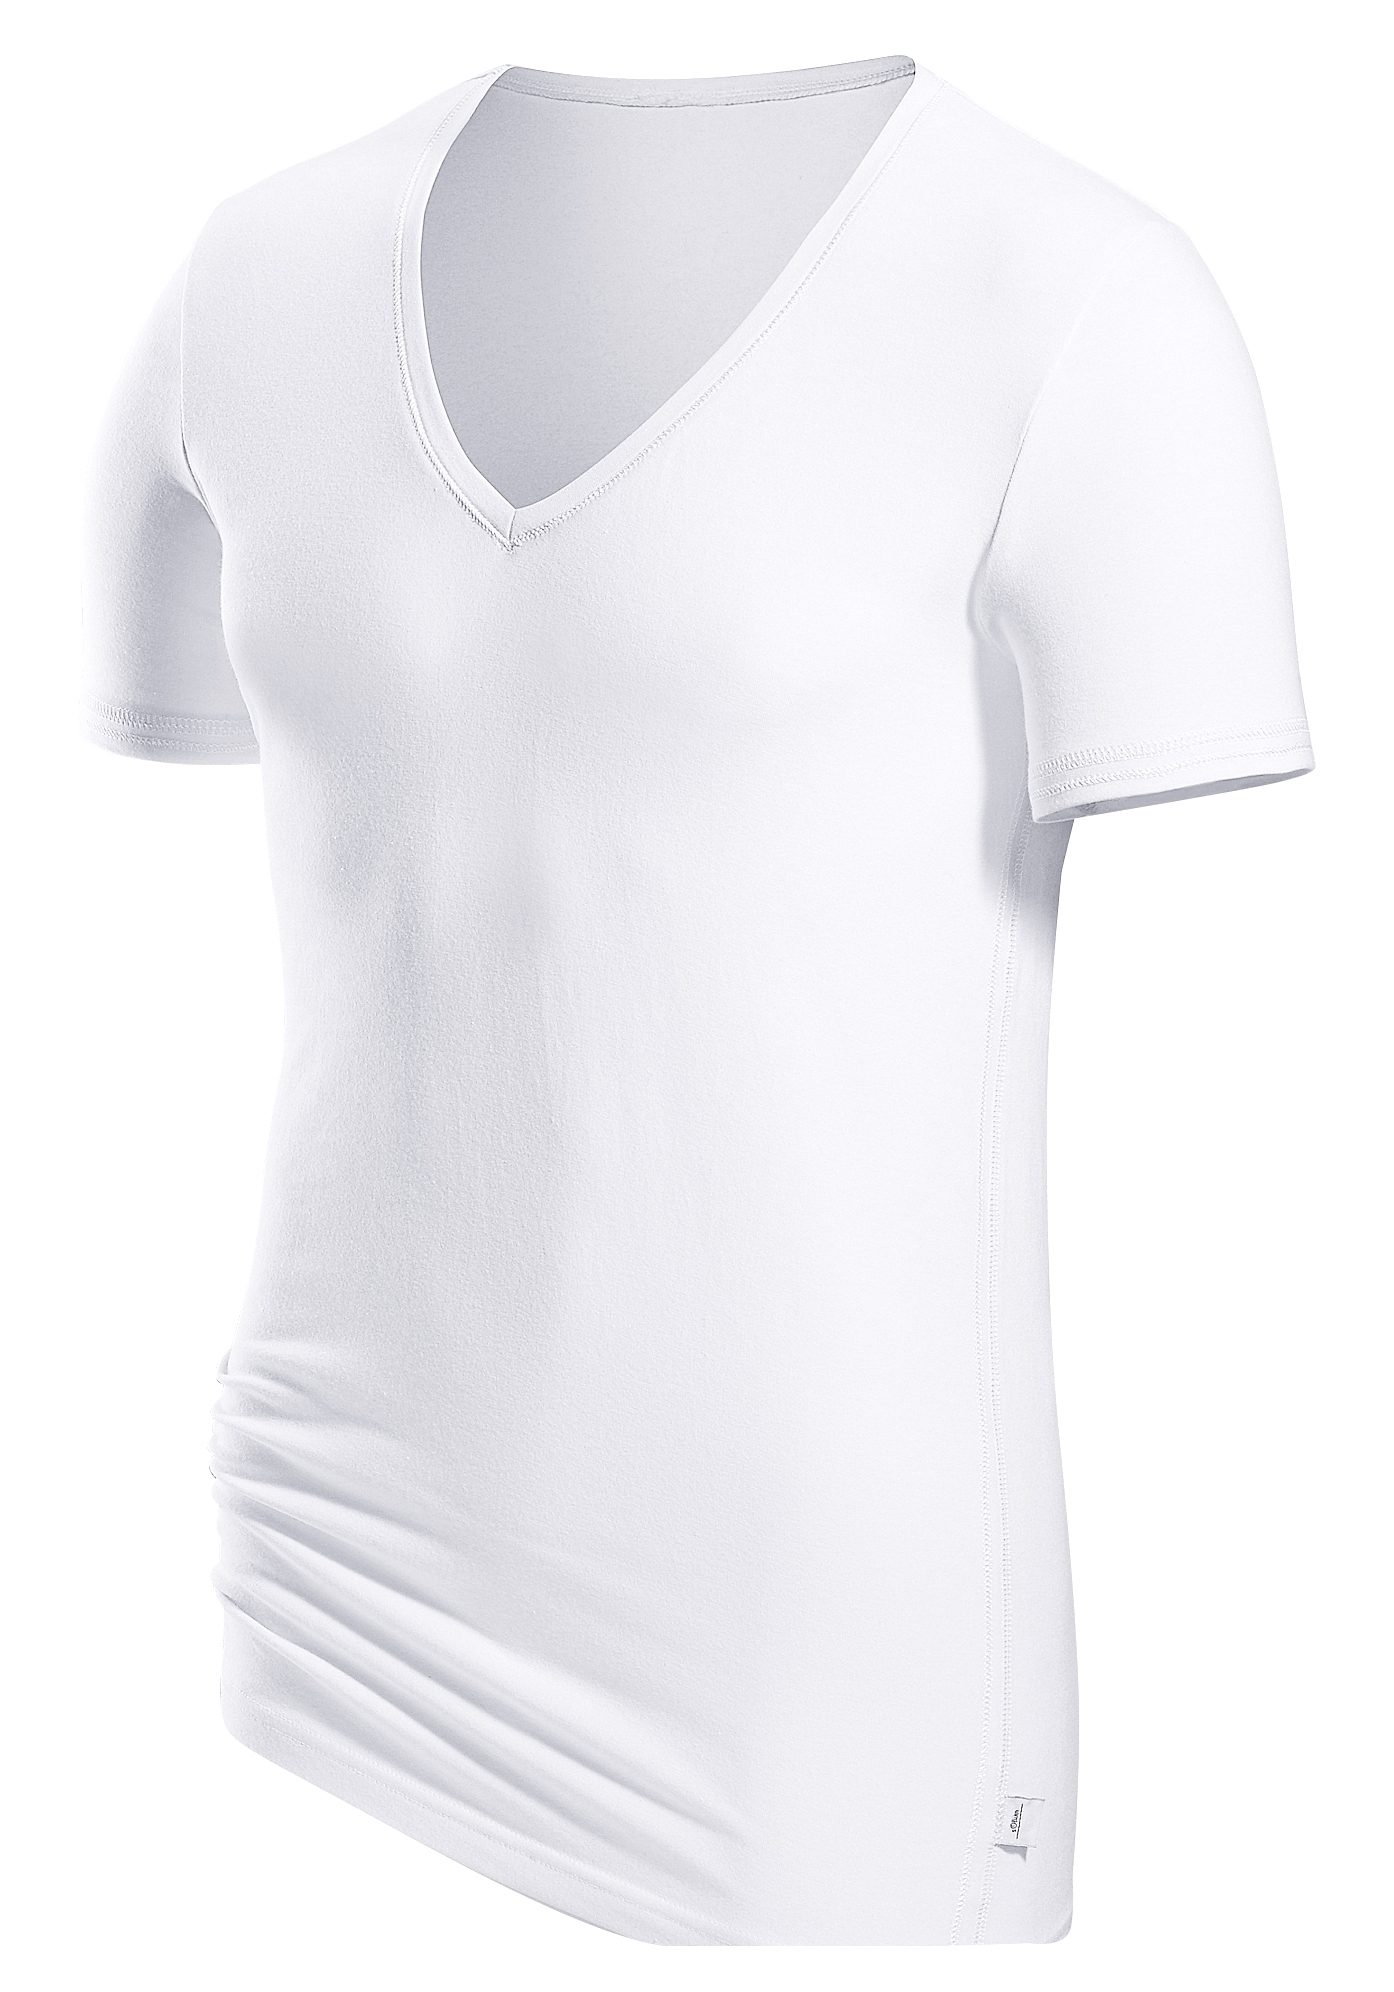 s.Oliver T-Shirt mit tiefem V-Ausschnitt kaufen | OTTO